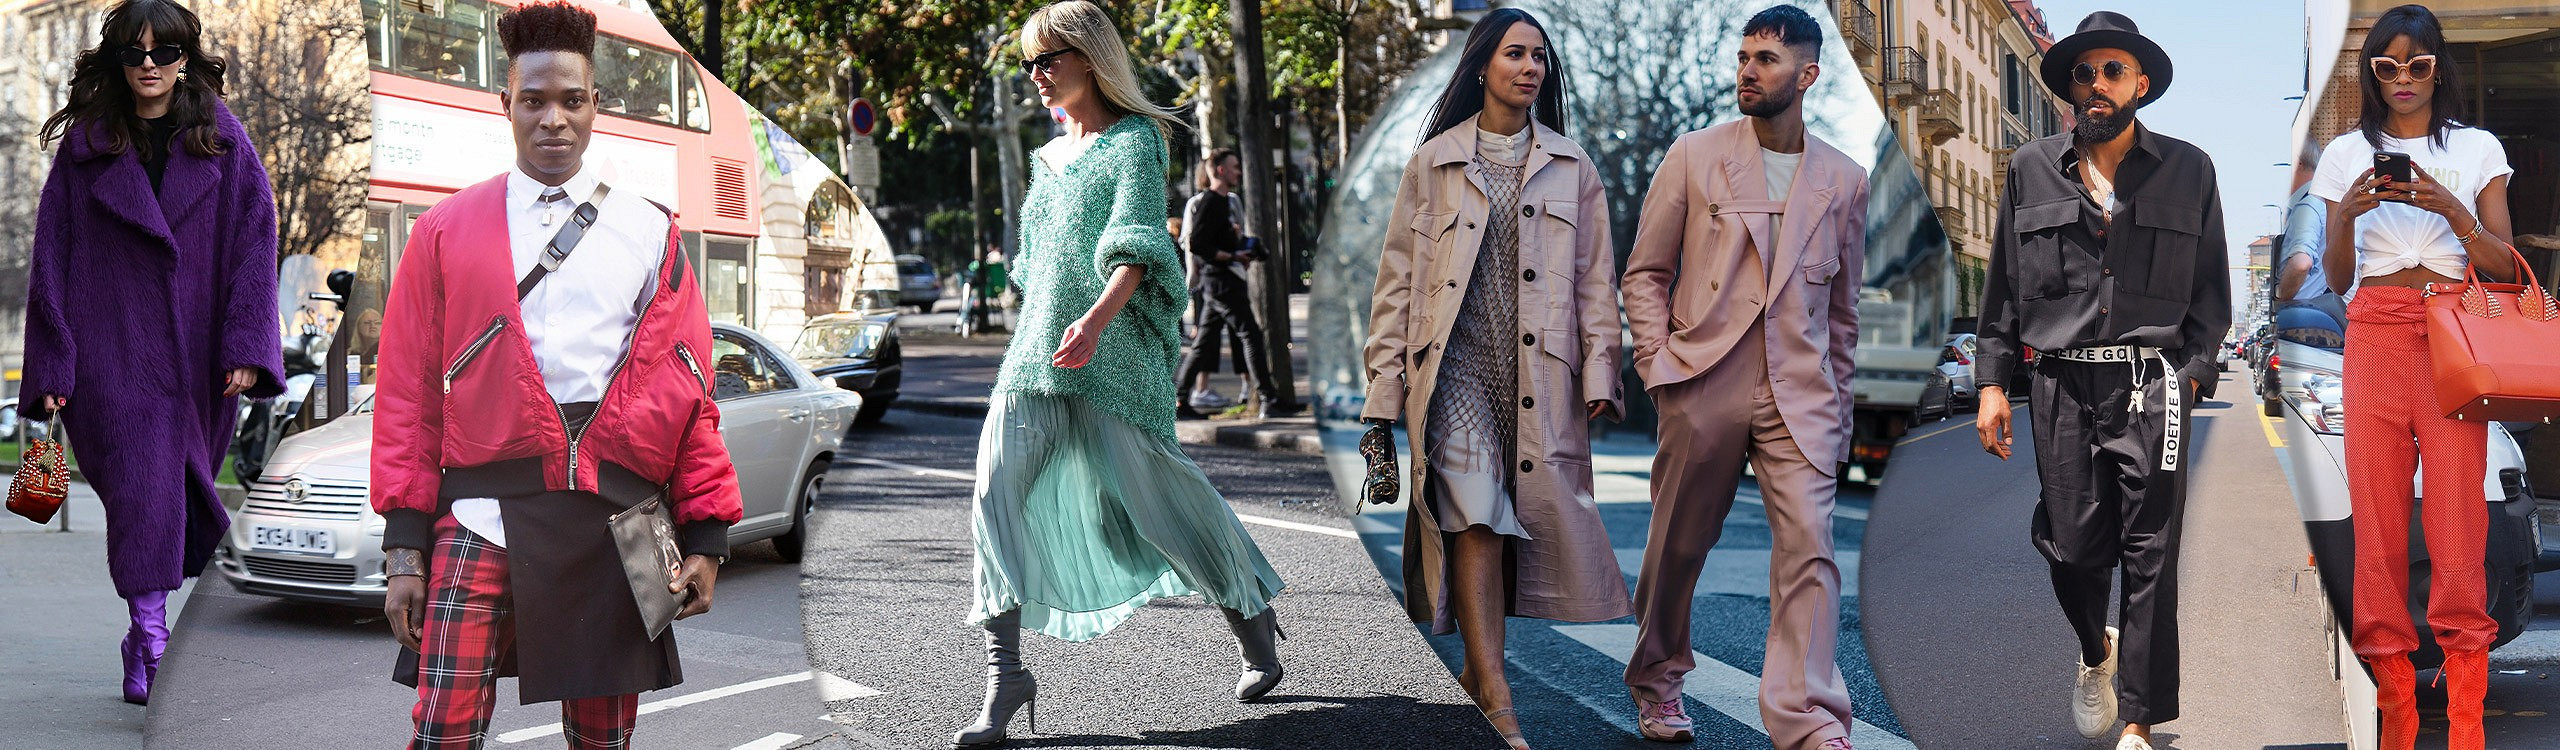 10 главных цветов Недели моды в Лондоне по версии Pantone